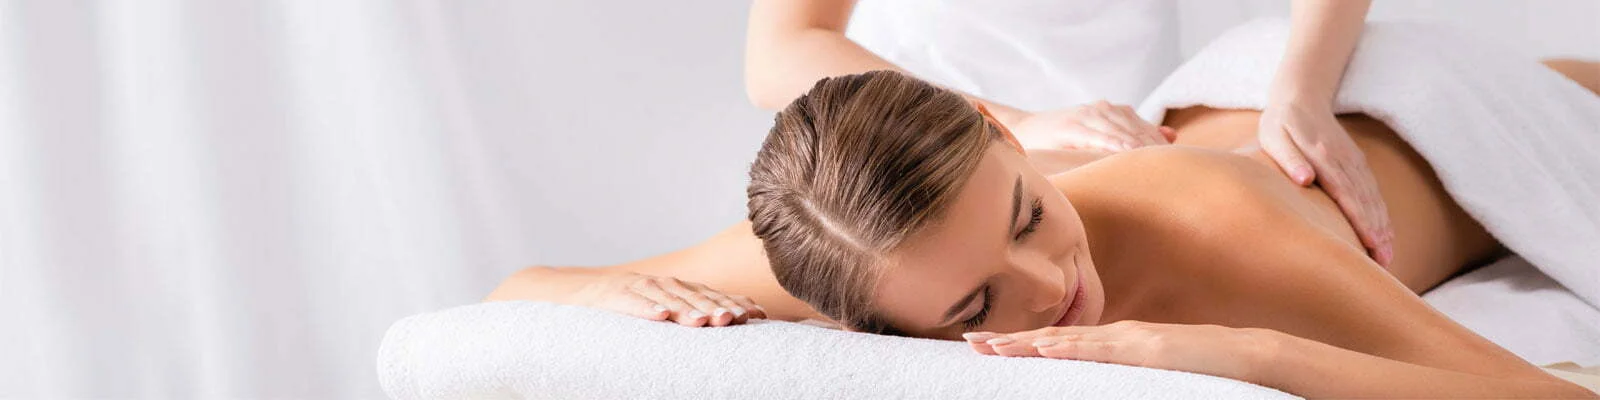 Winnipeg Massage Therapist - Massage Therapy Near You - Best